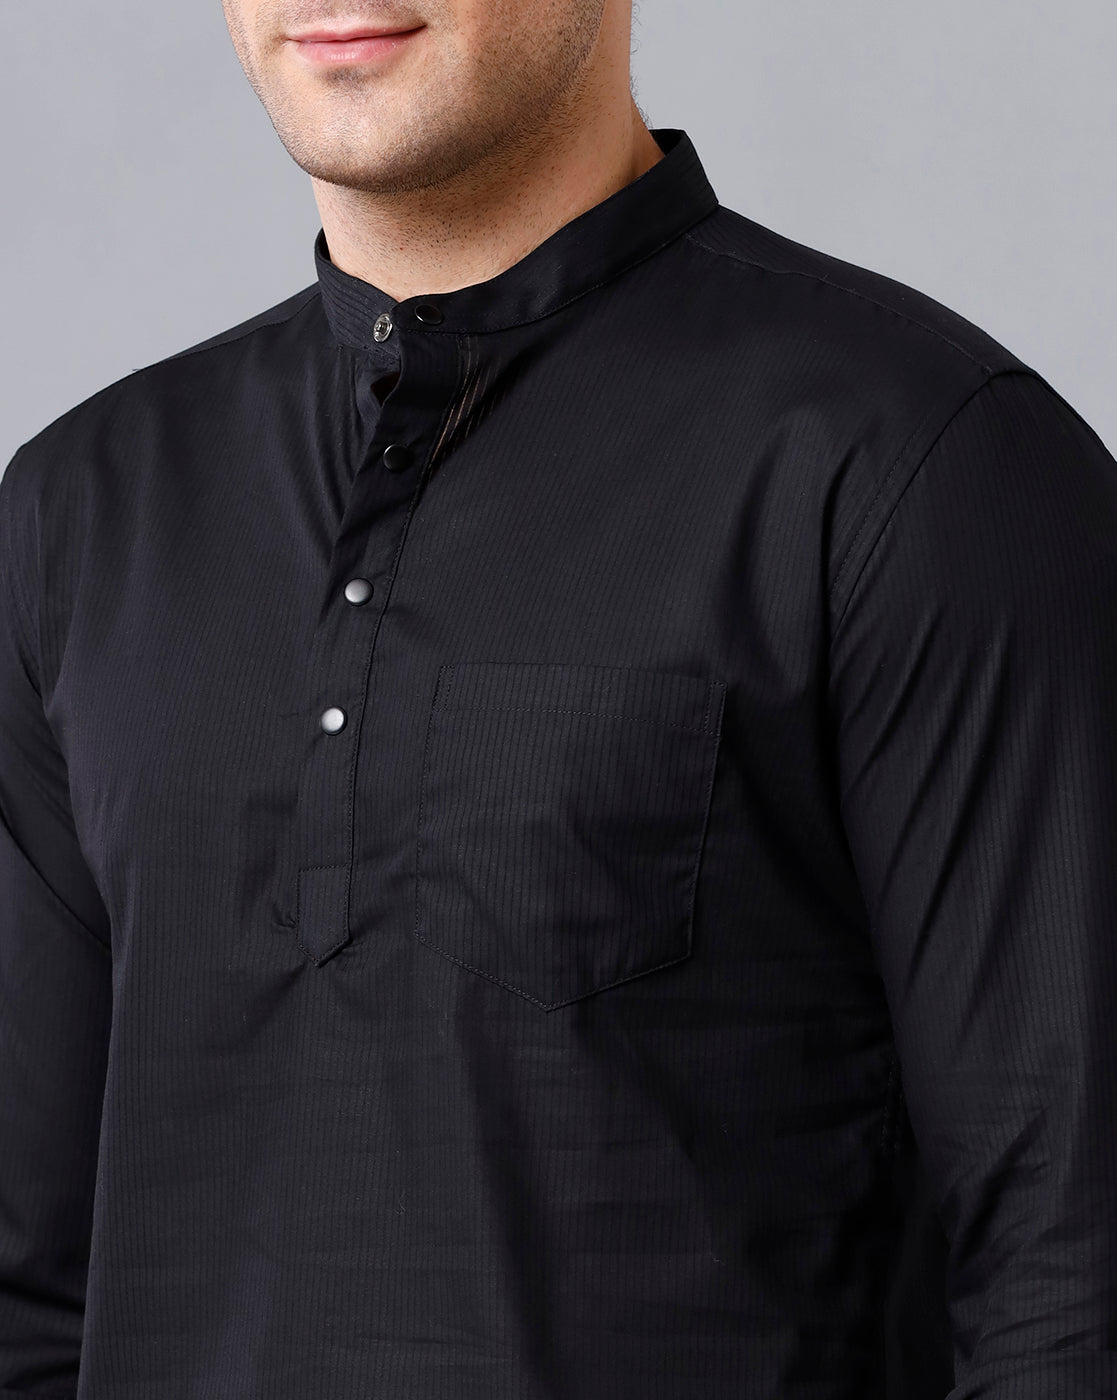 black kurta shirt